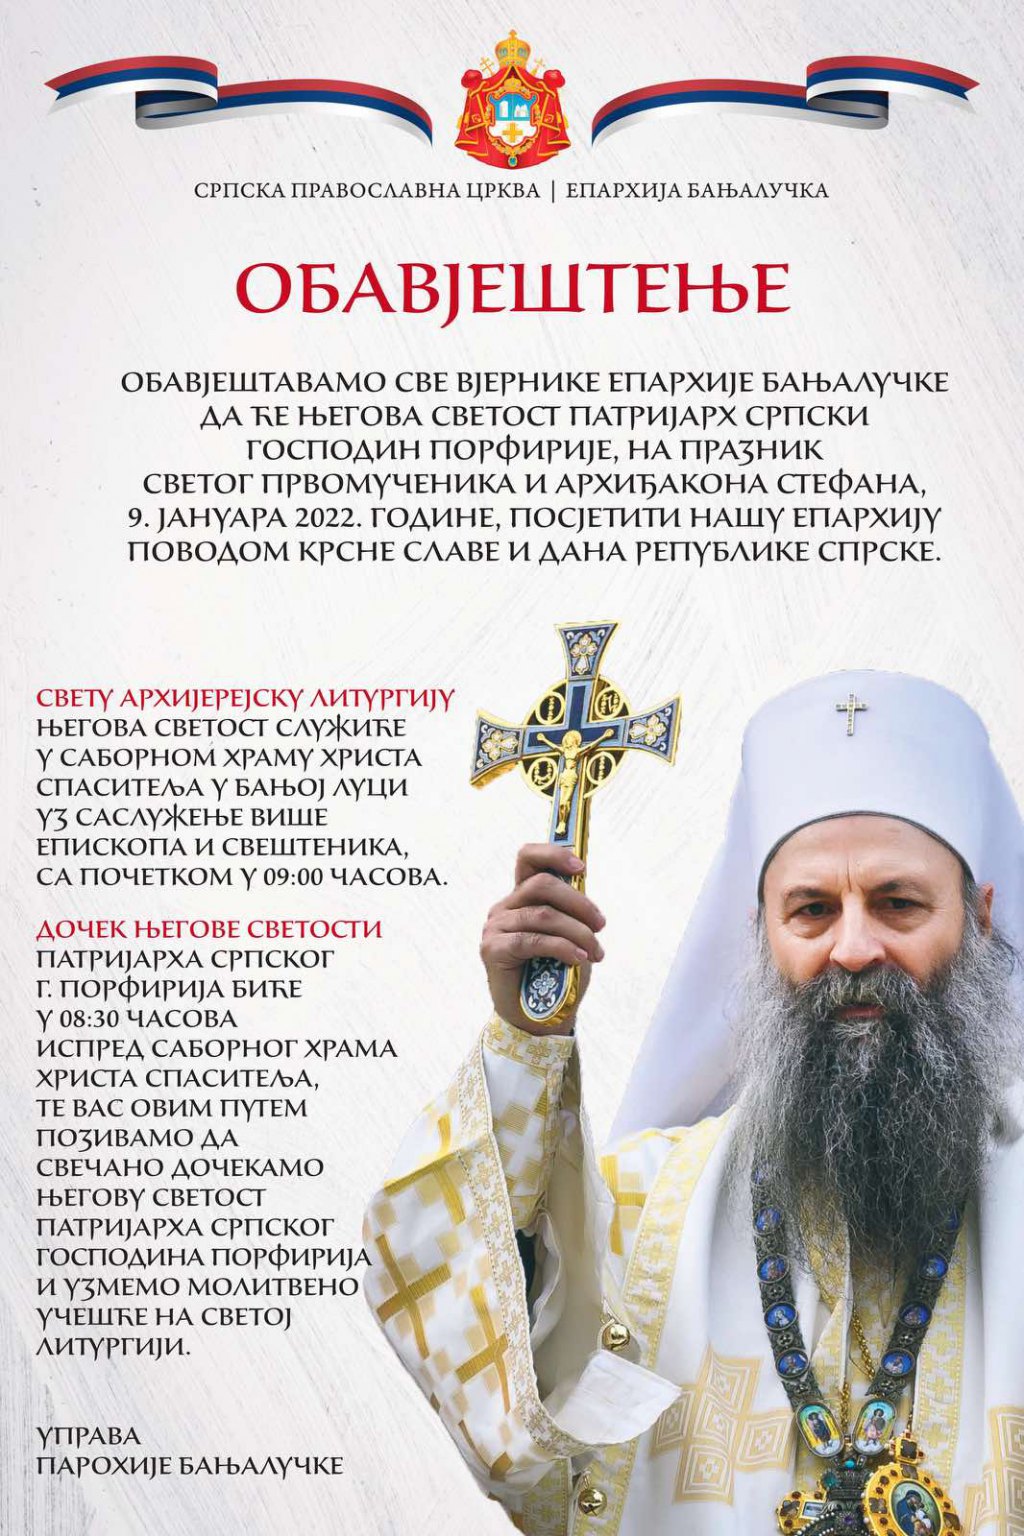 Sveta arhijerejska liturgija u Banjaluci 